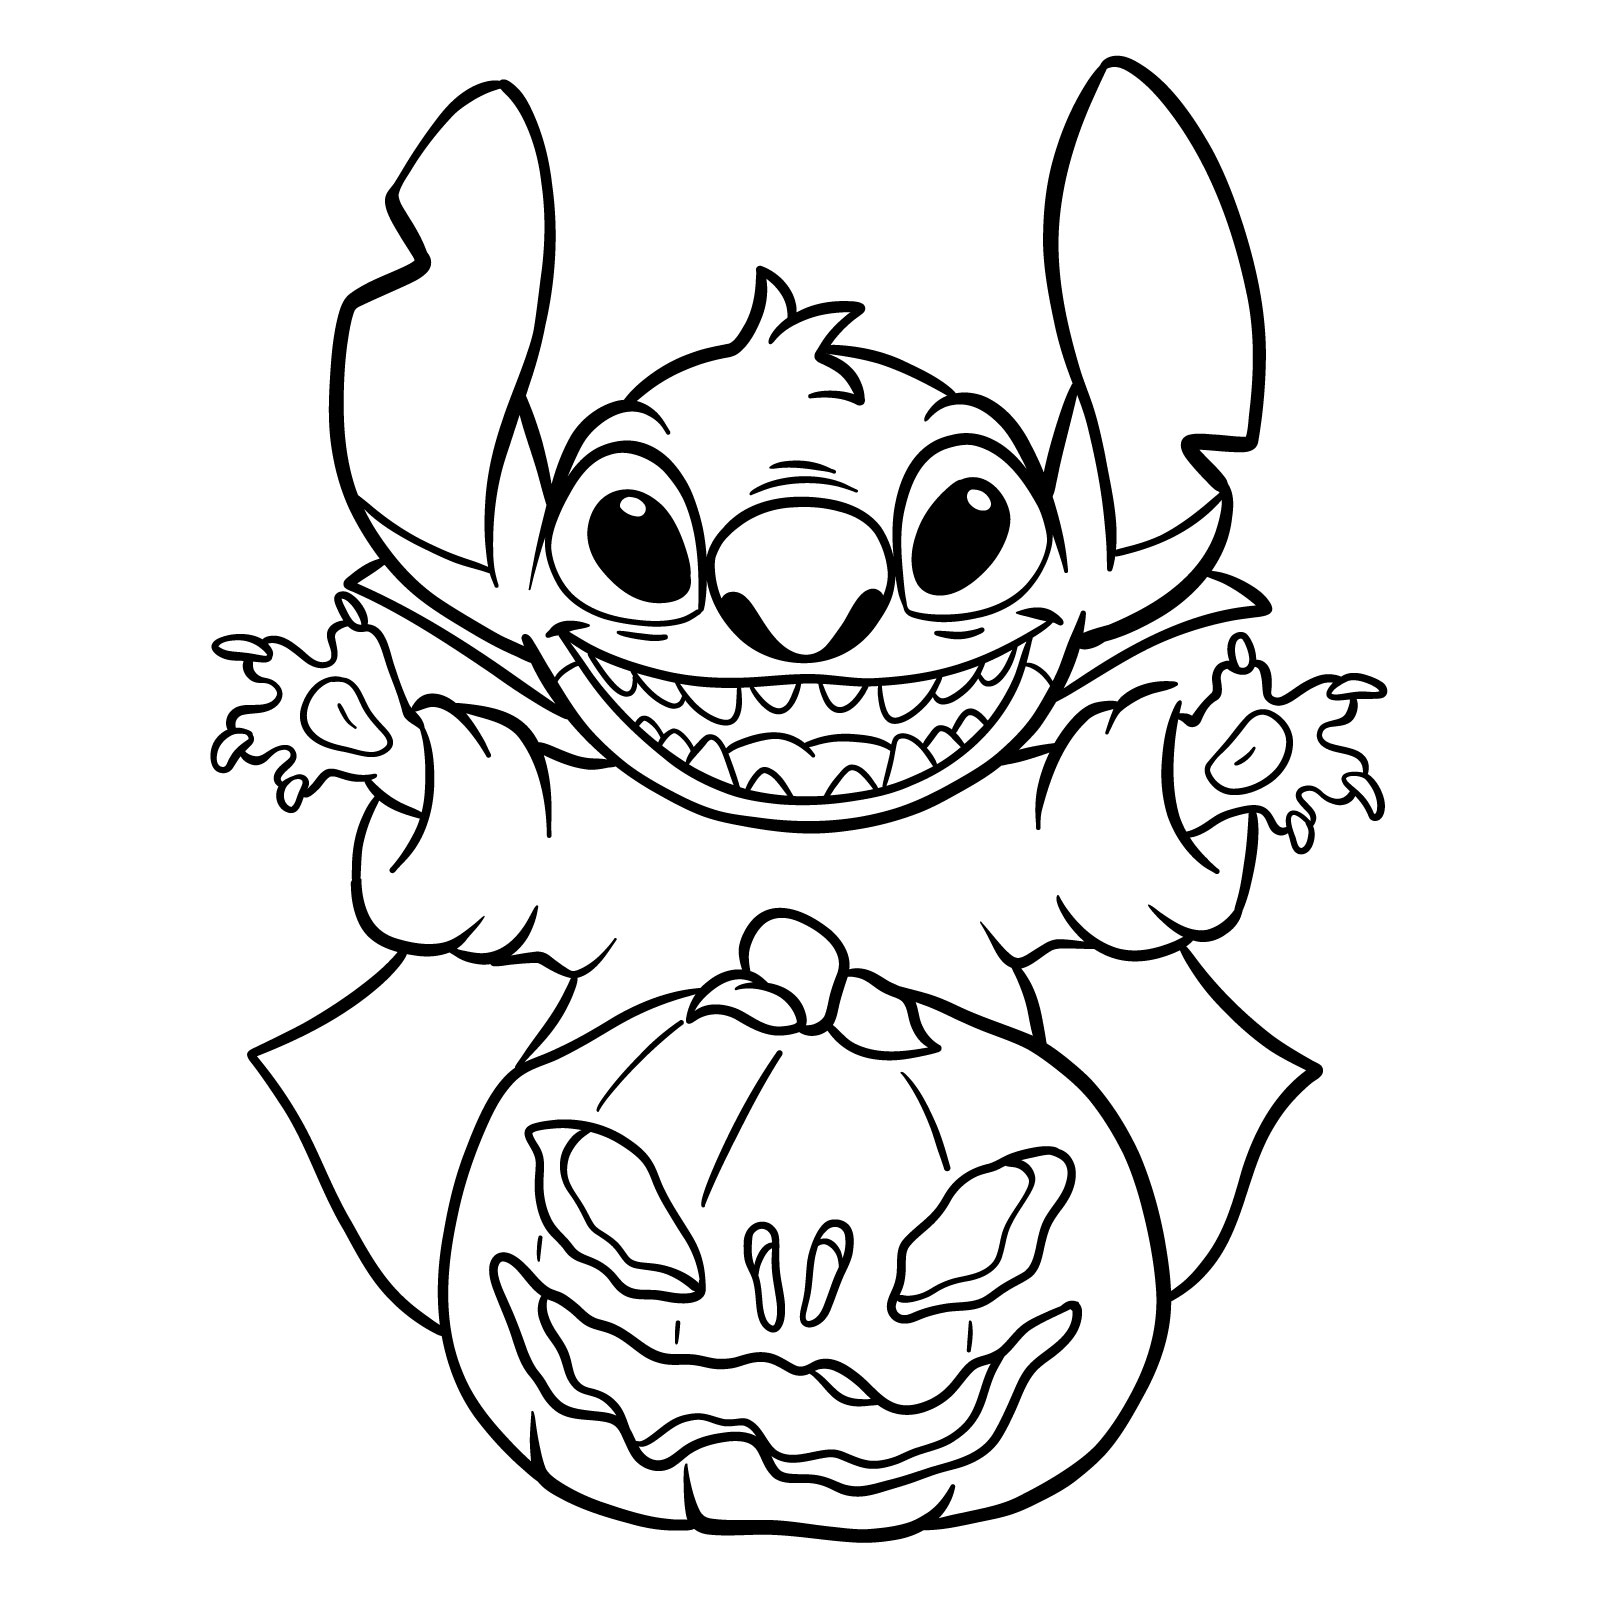 How to Draw Halloween Stitch with a jack-o'-lantern - final step